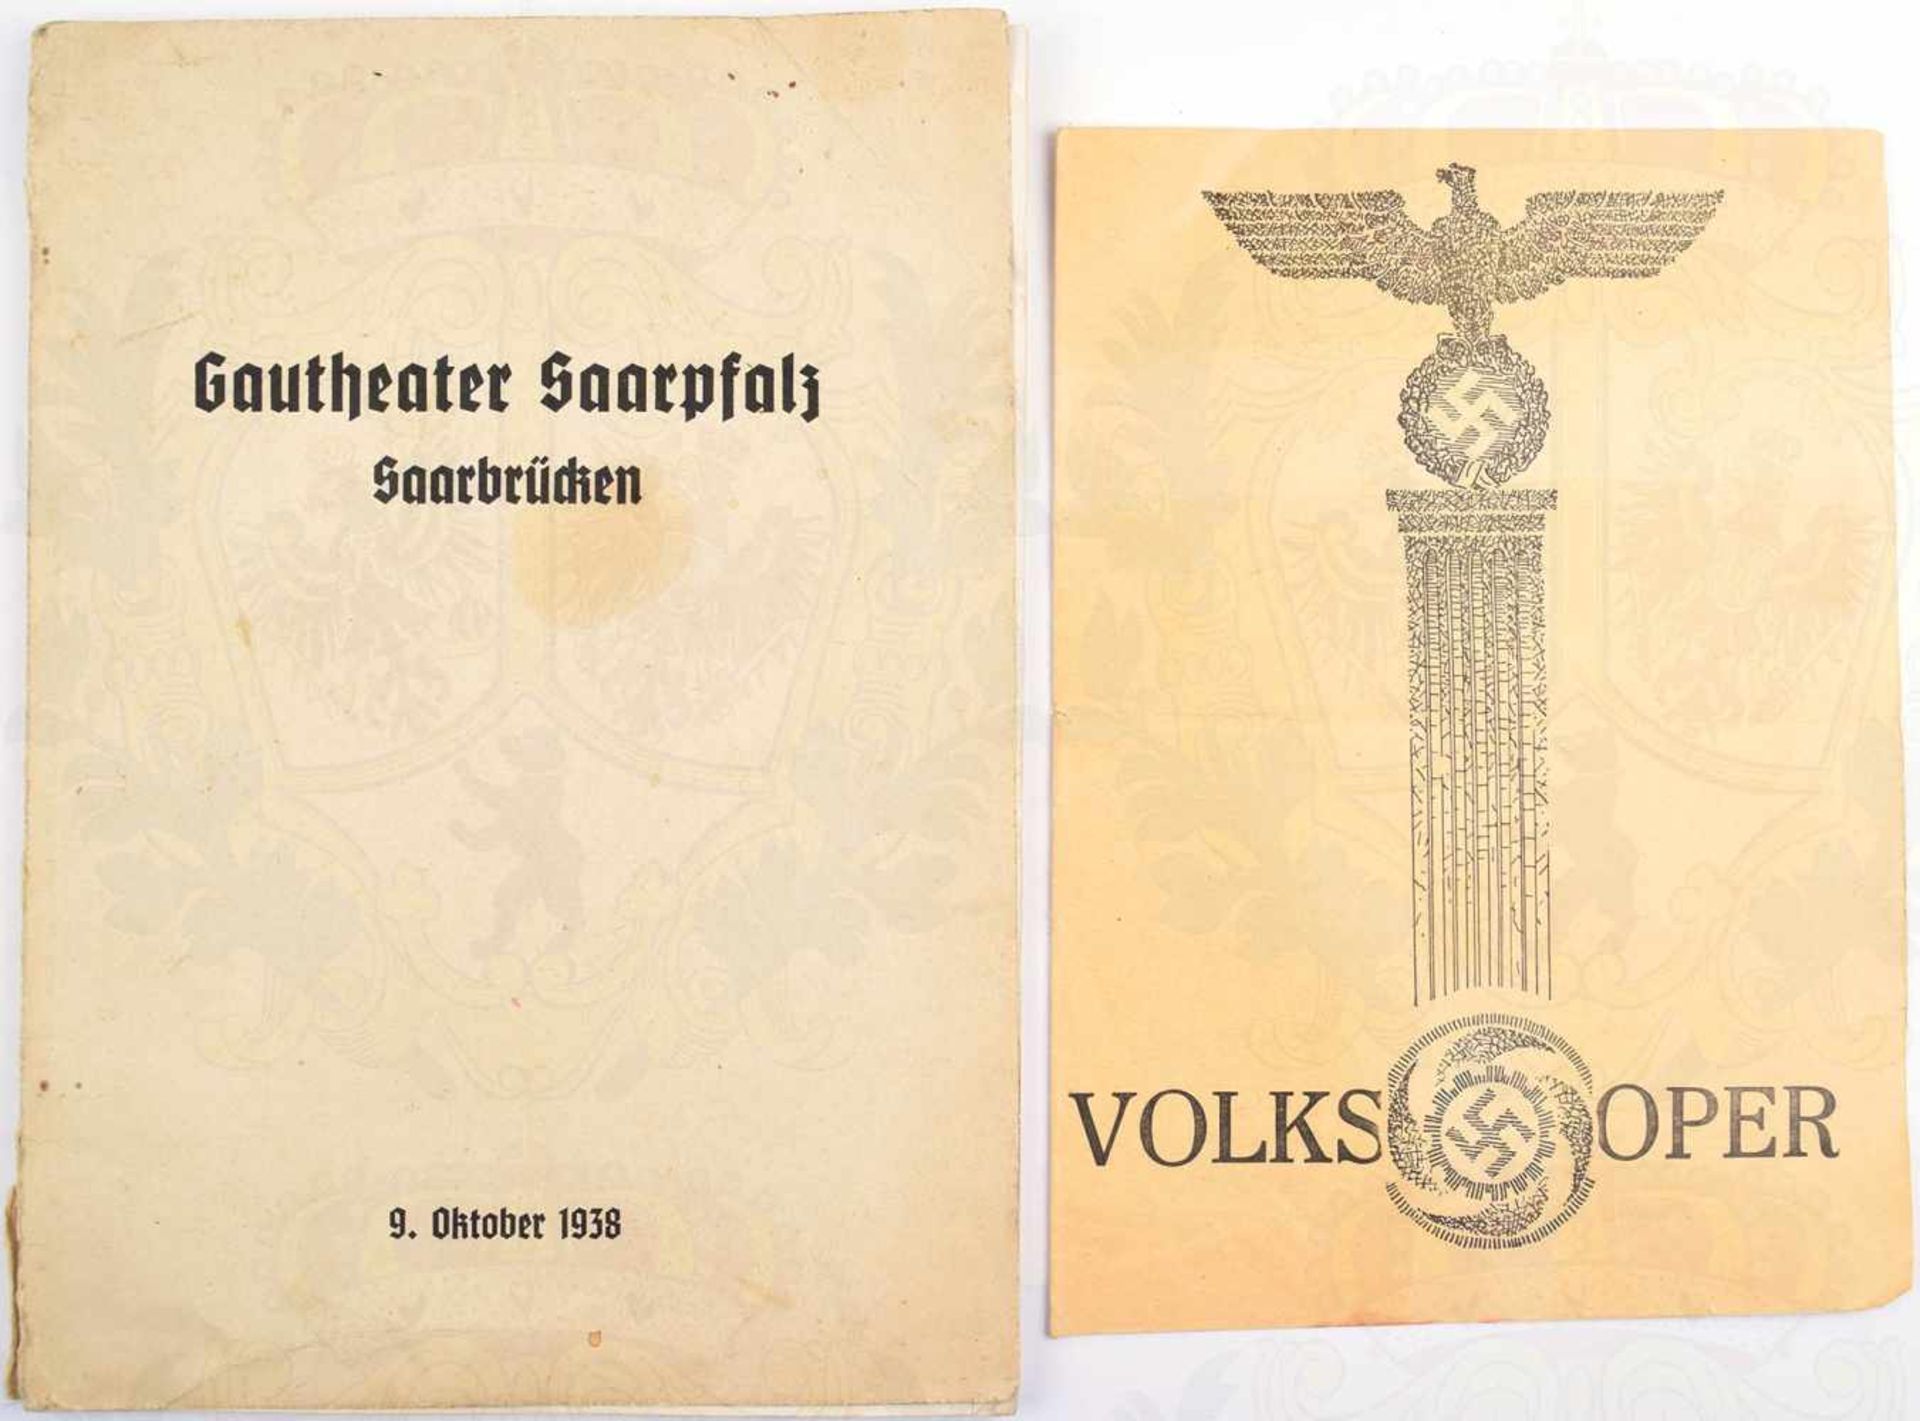 2 THEATERPROGRAMME, Gautheater Saarpfalz, Saarbrücken 9.10.1938, mit Portraits von A. Hitler, J.